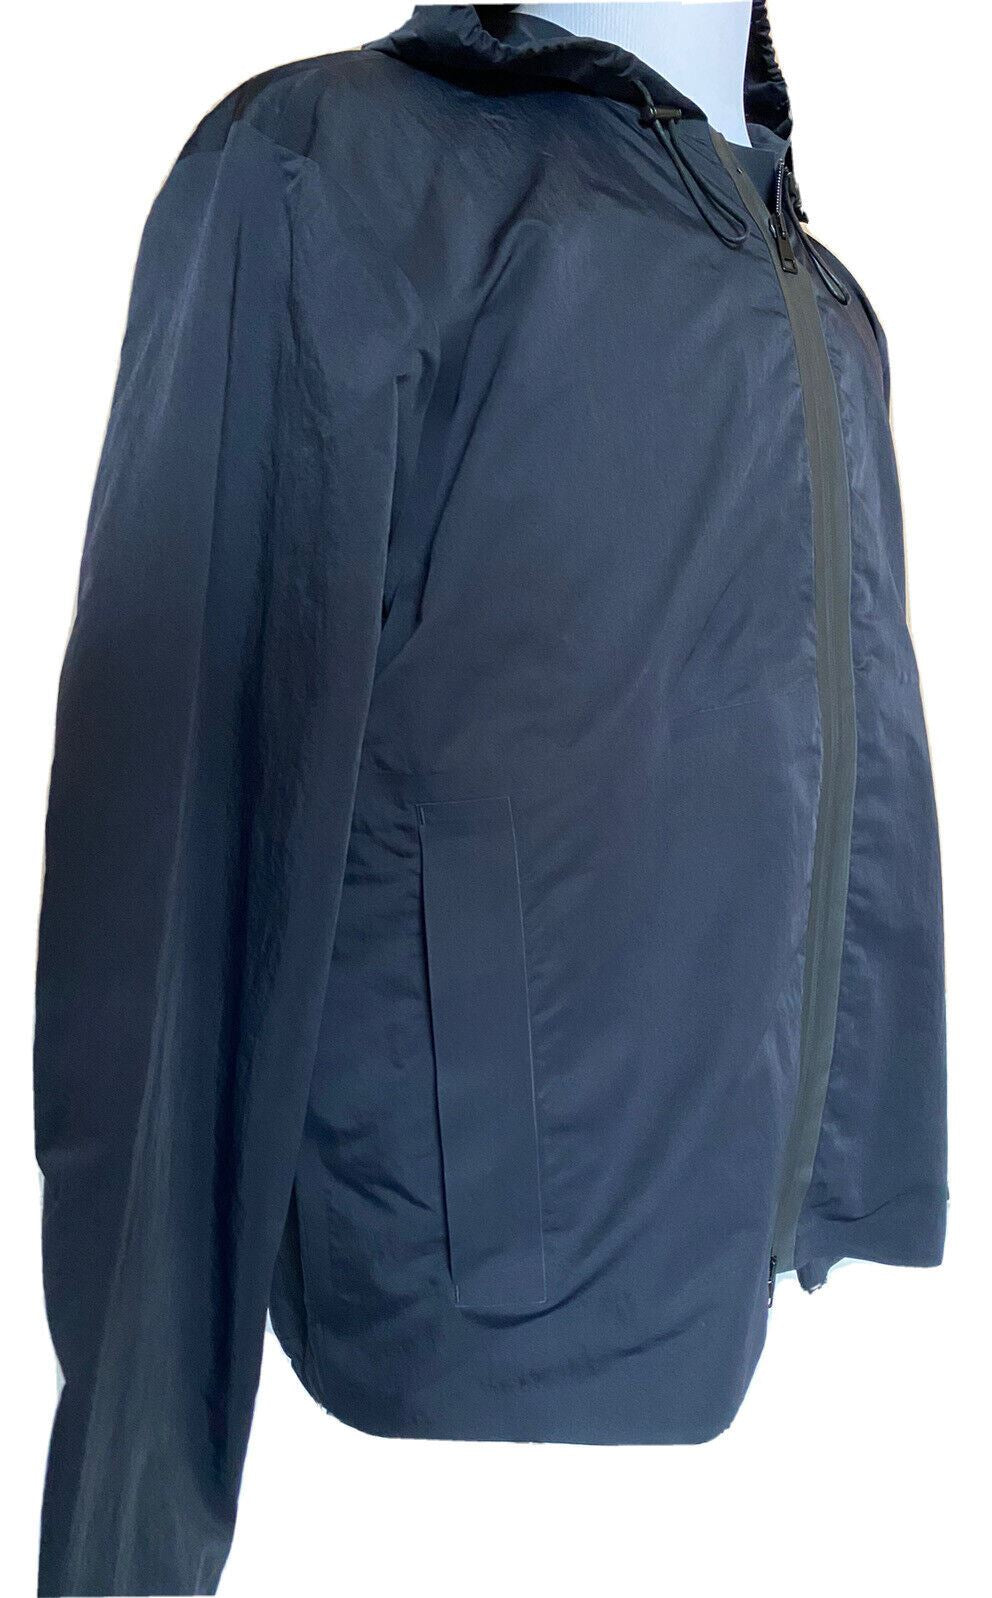 Мужская черная куртка из технического нейлона Bottega Veneta 1850 долларов NWT 42 US